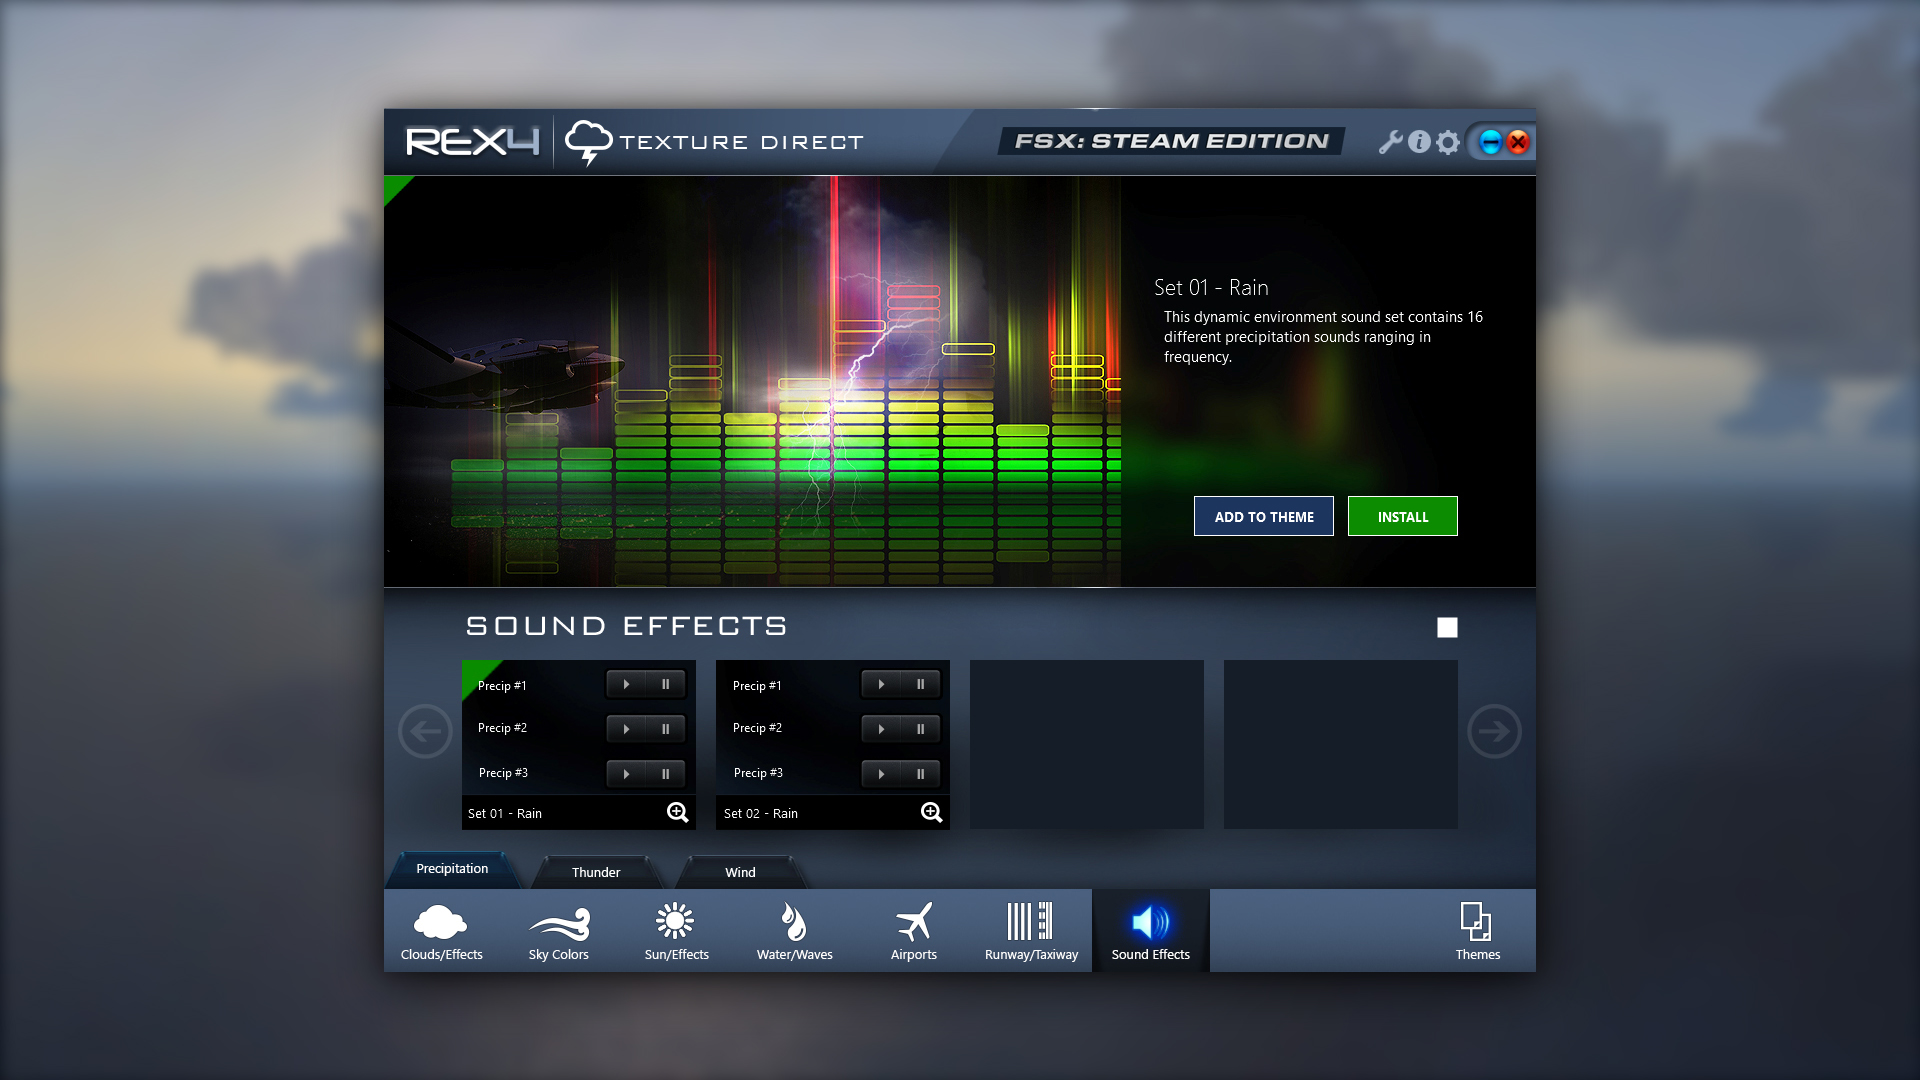 FSX: Steam Edition - REX 4 Texture Direct Enhanced Edition Add-On screenshot